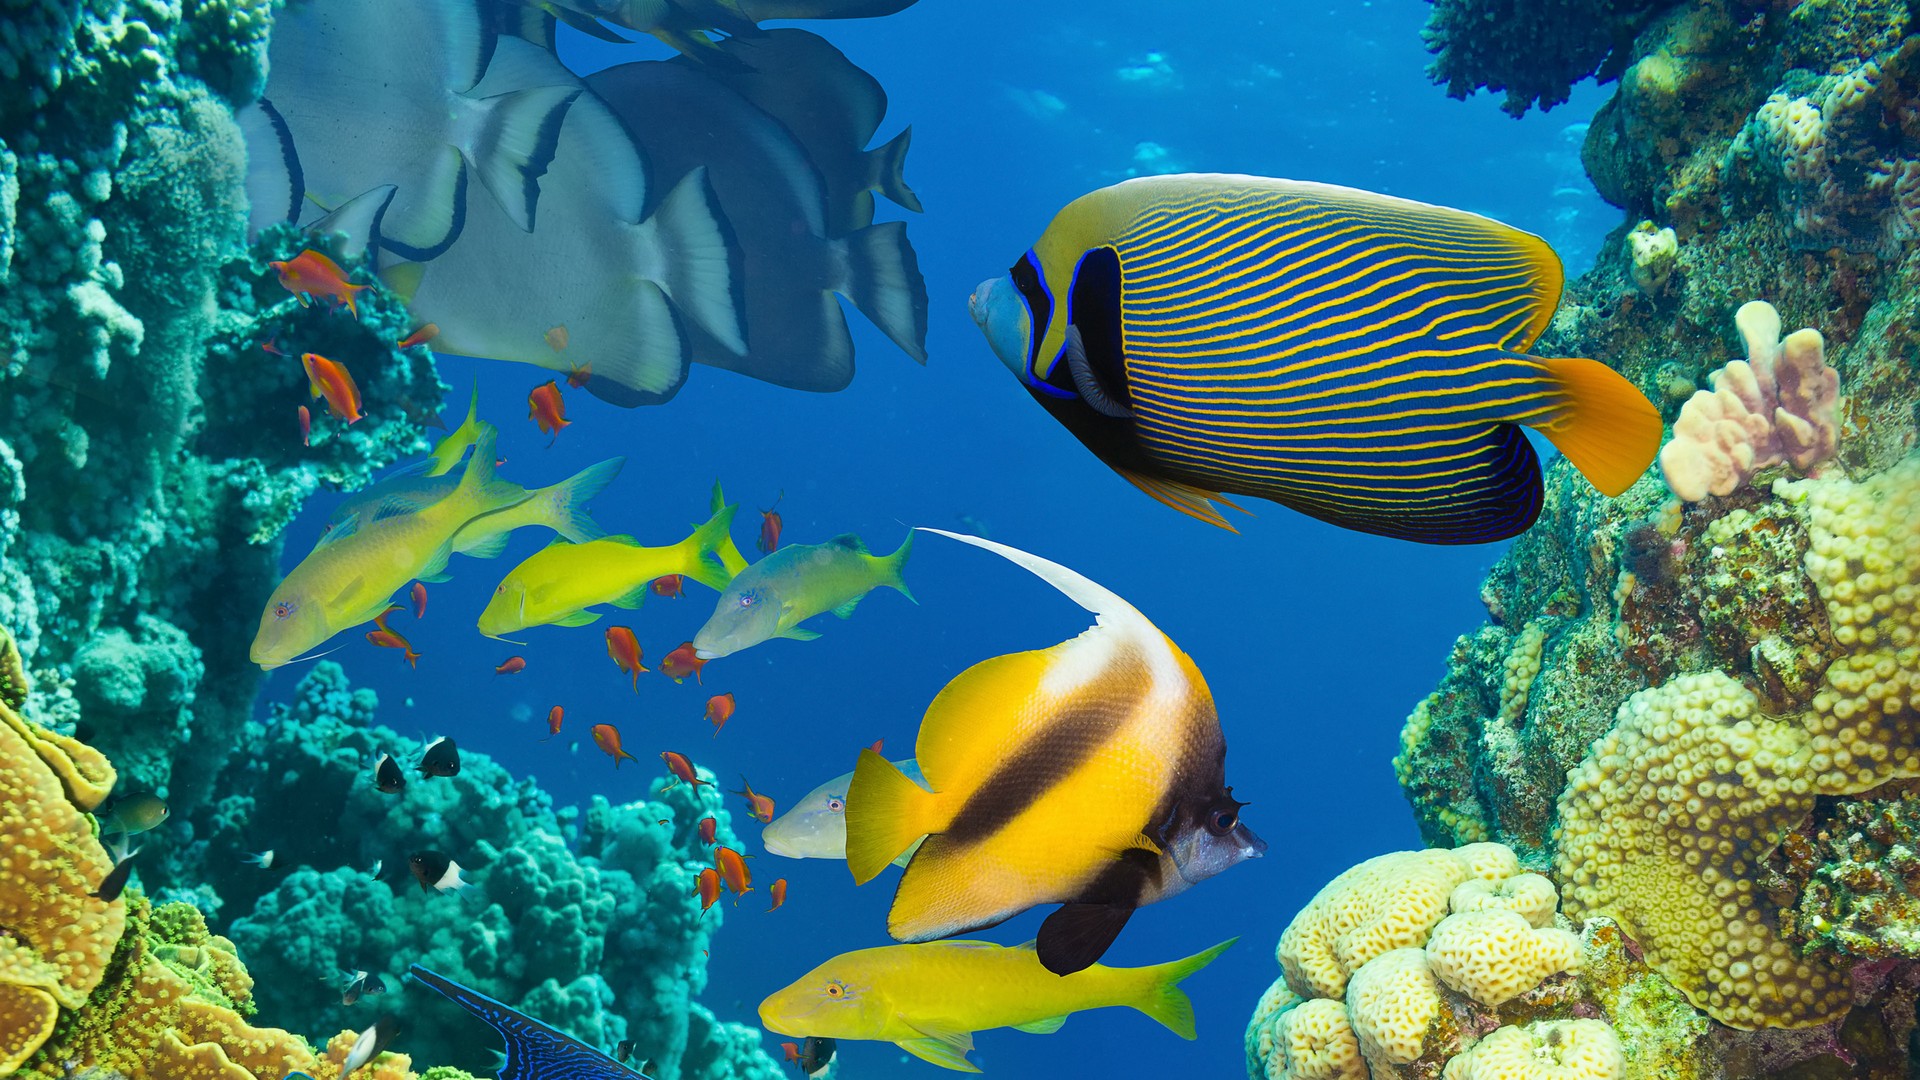 Ocean Marine Life Coral Colorful Tropical Fish Wallpaper Desktop ...